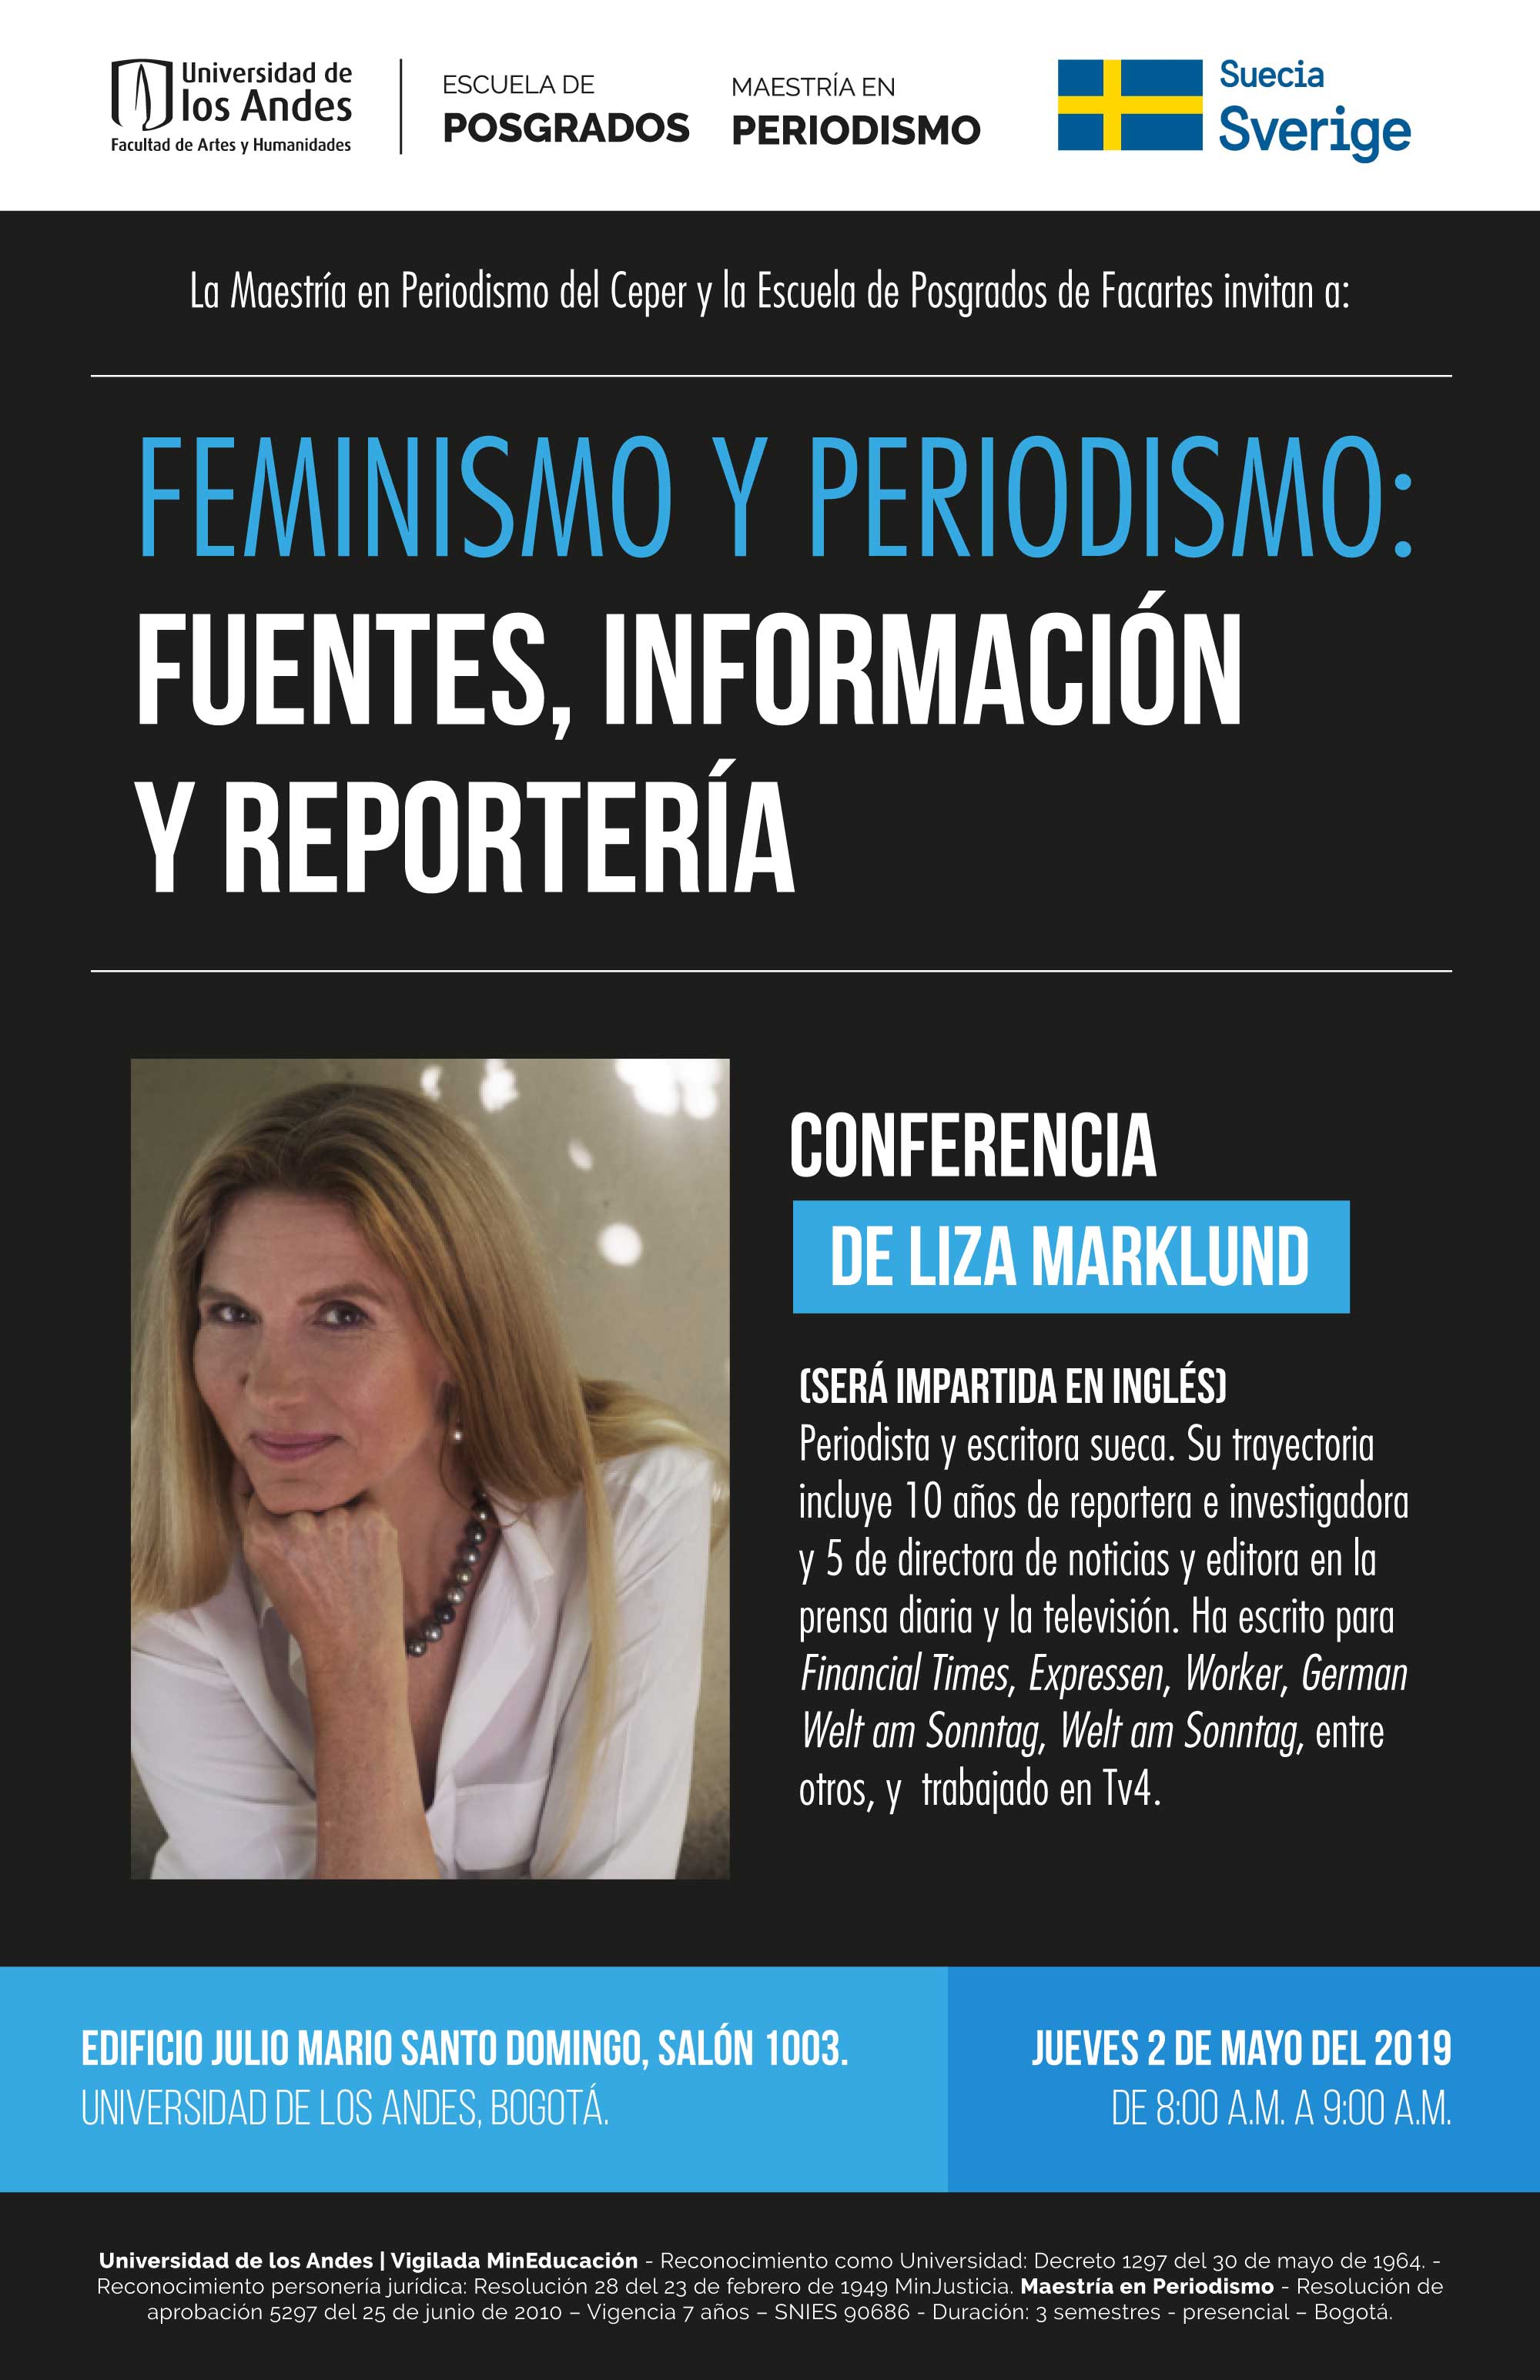 Feminismo y periodismo: fuentes, información y reportería